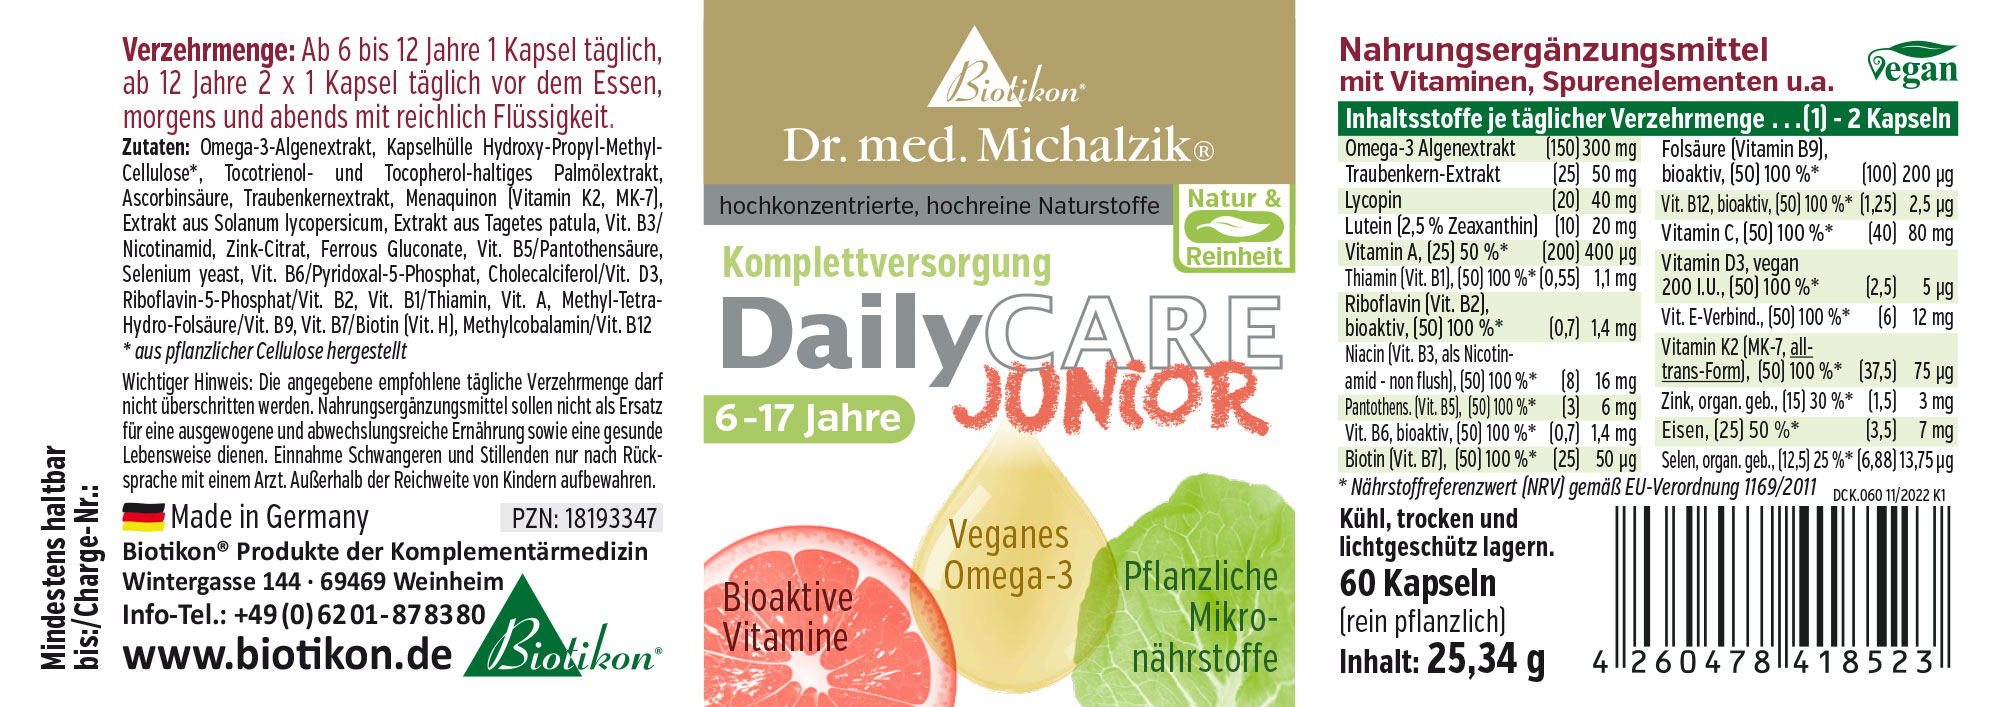 DailyCare Junior - Bioaktive Vitamine, veganes Omega-3 + Spurenelemente und hochwertige Pflanzenstoffe